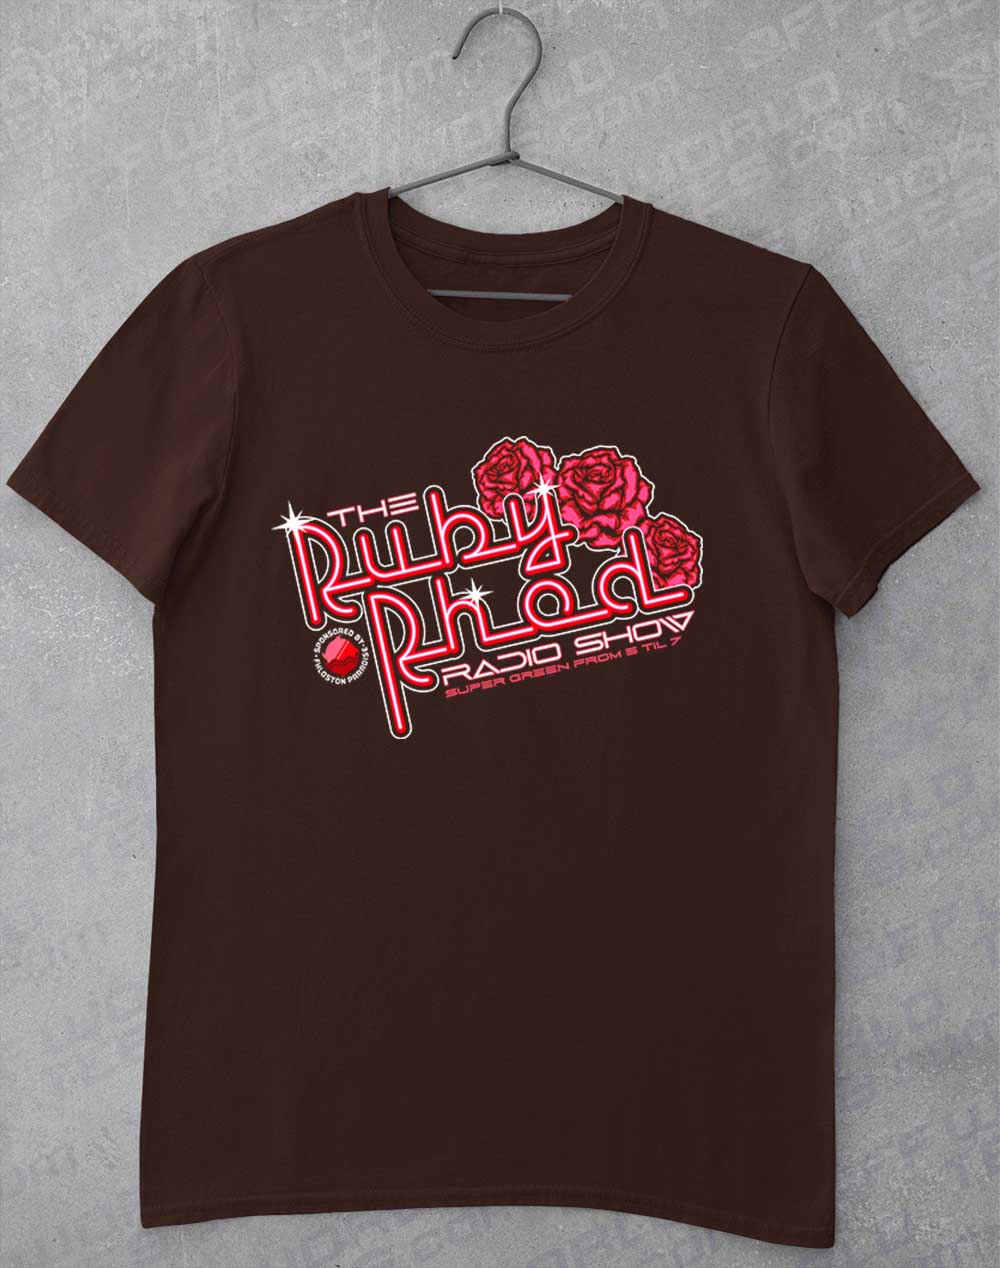 Dark Chocolate - Ruby Rhod Radio Show T-Shirt